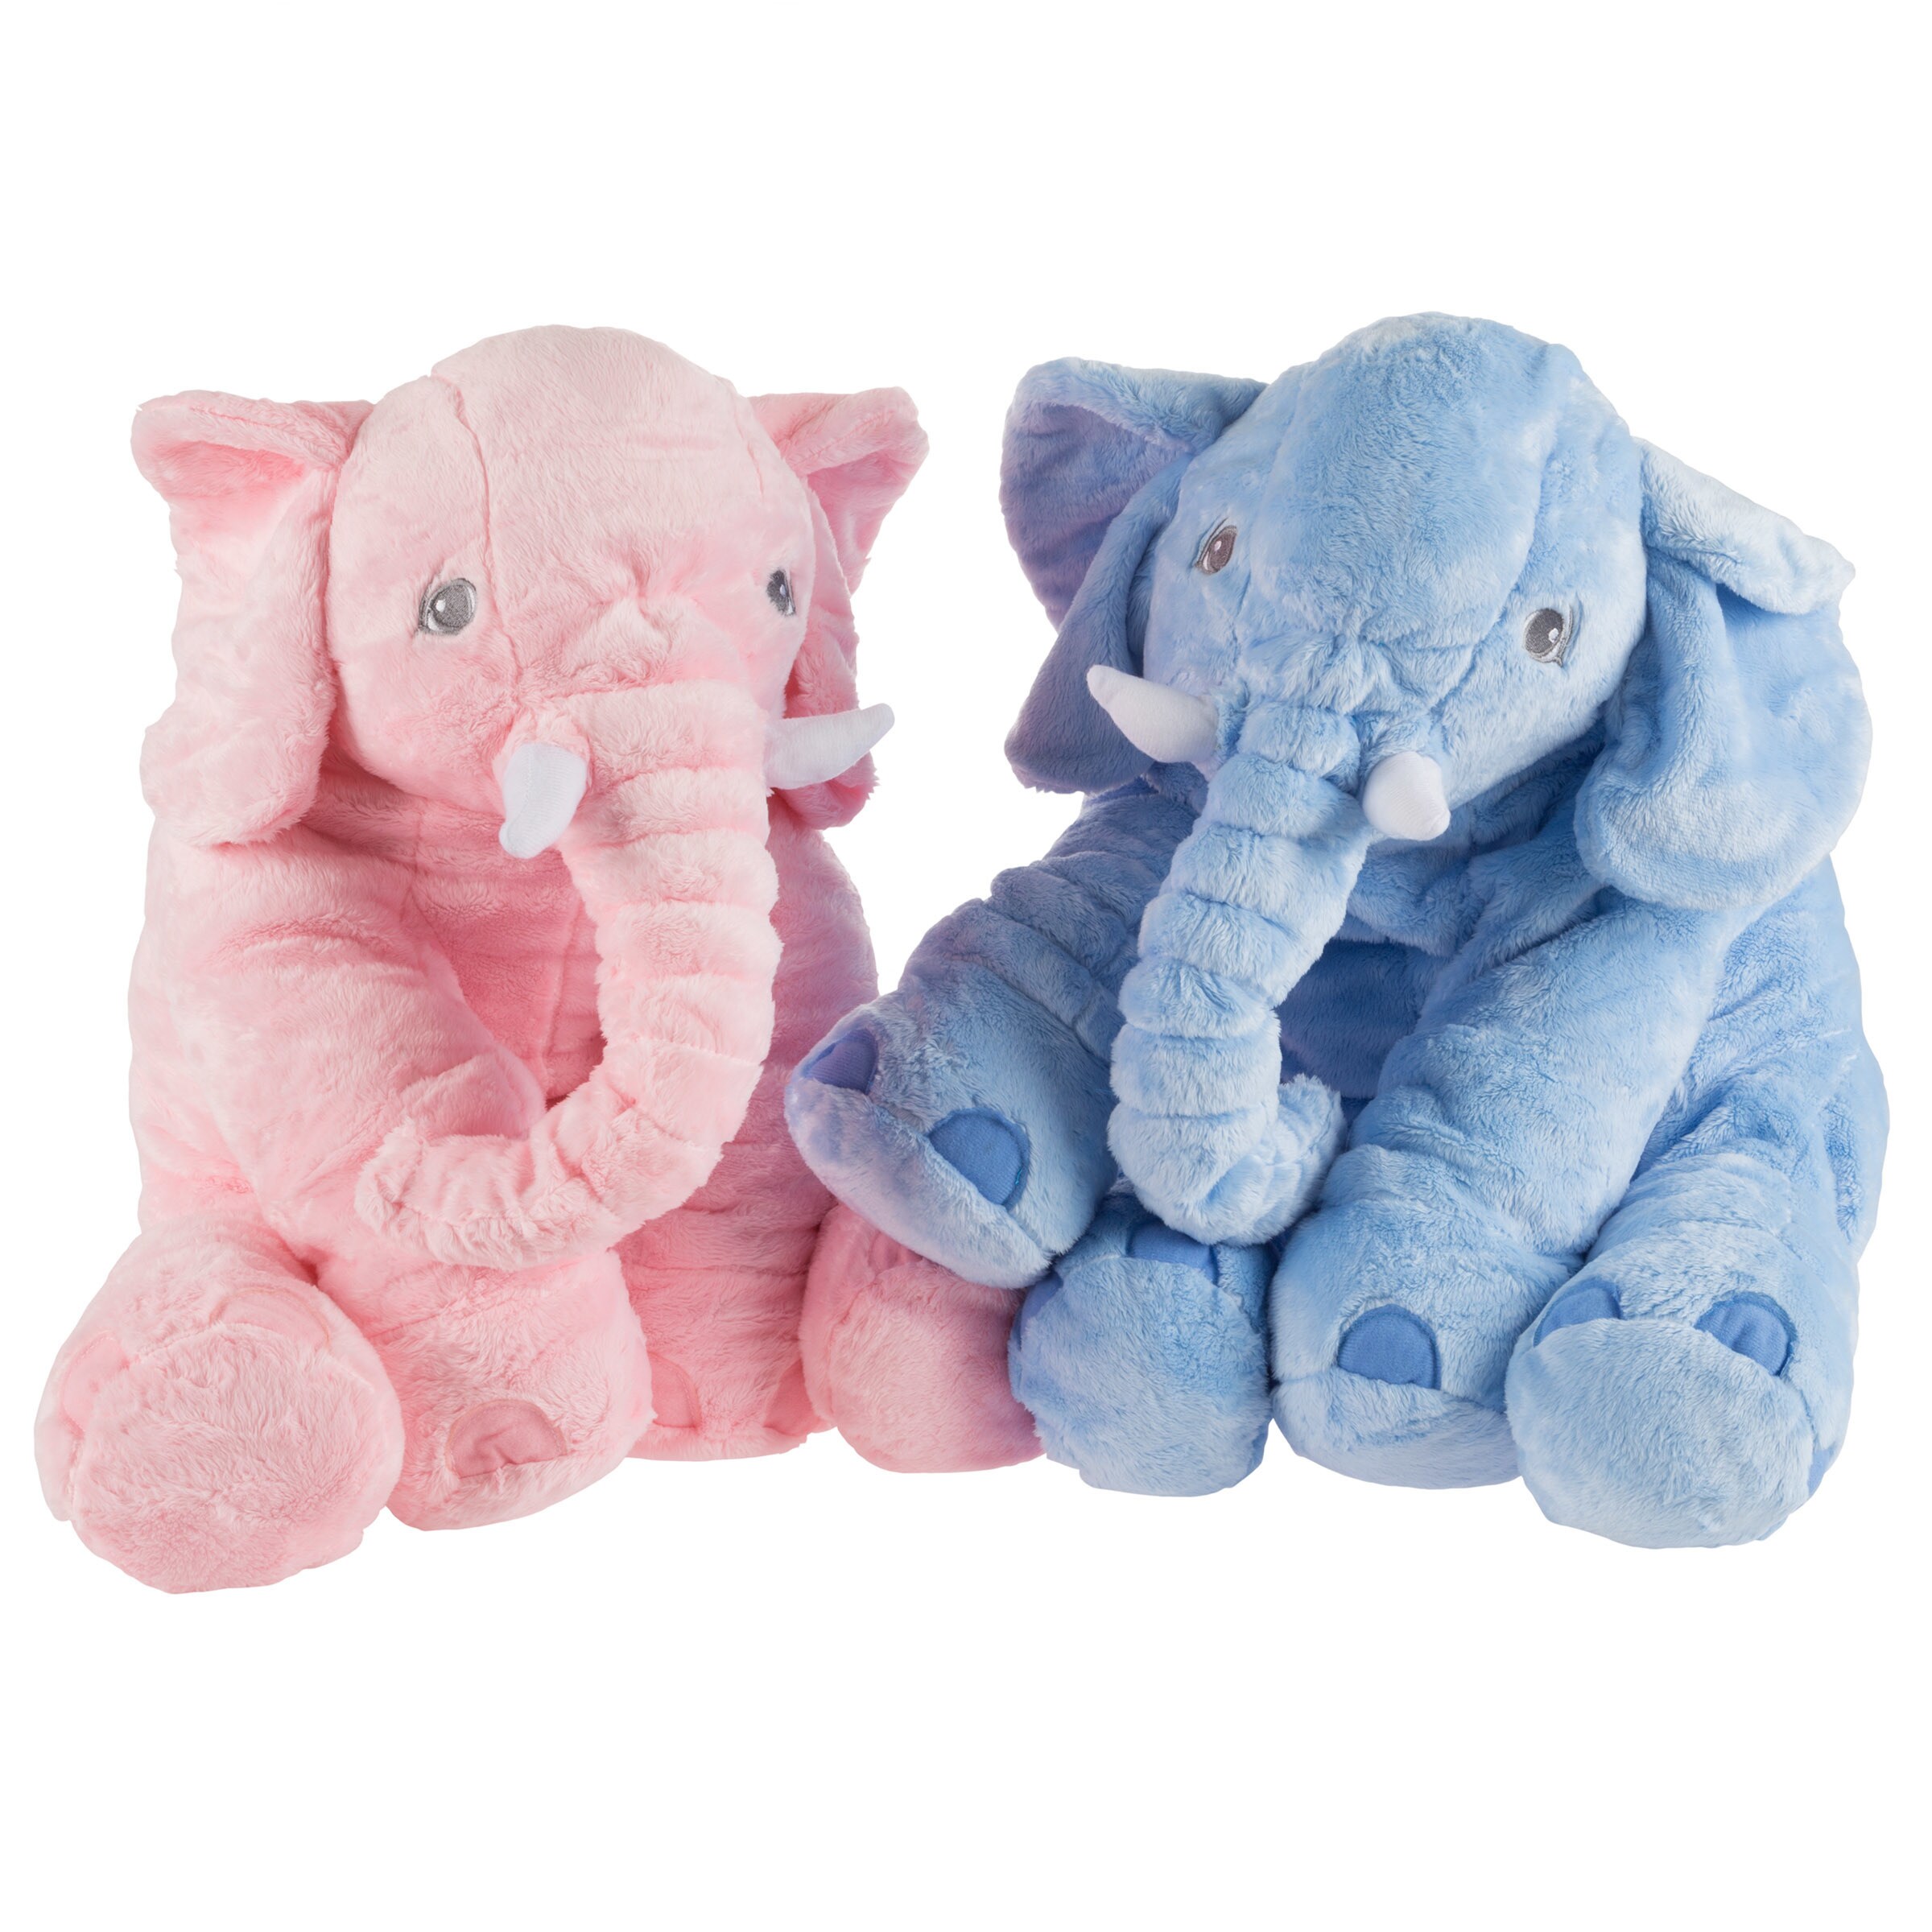 blue elephant teddy bear